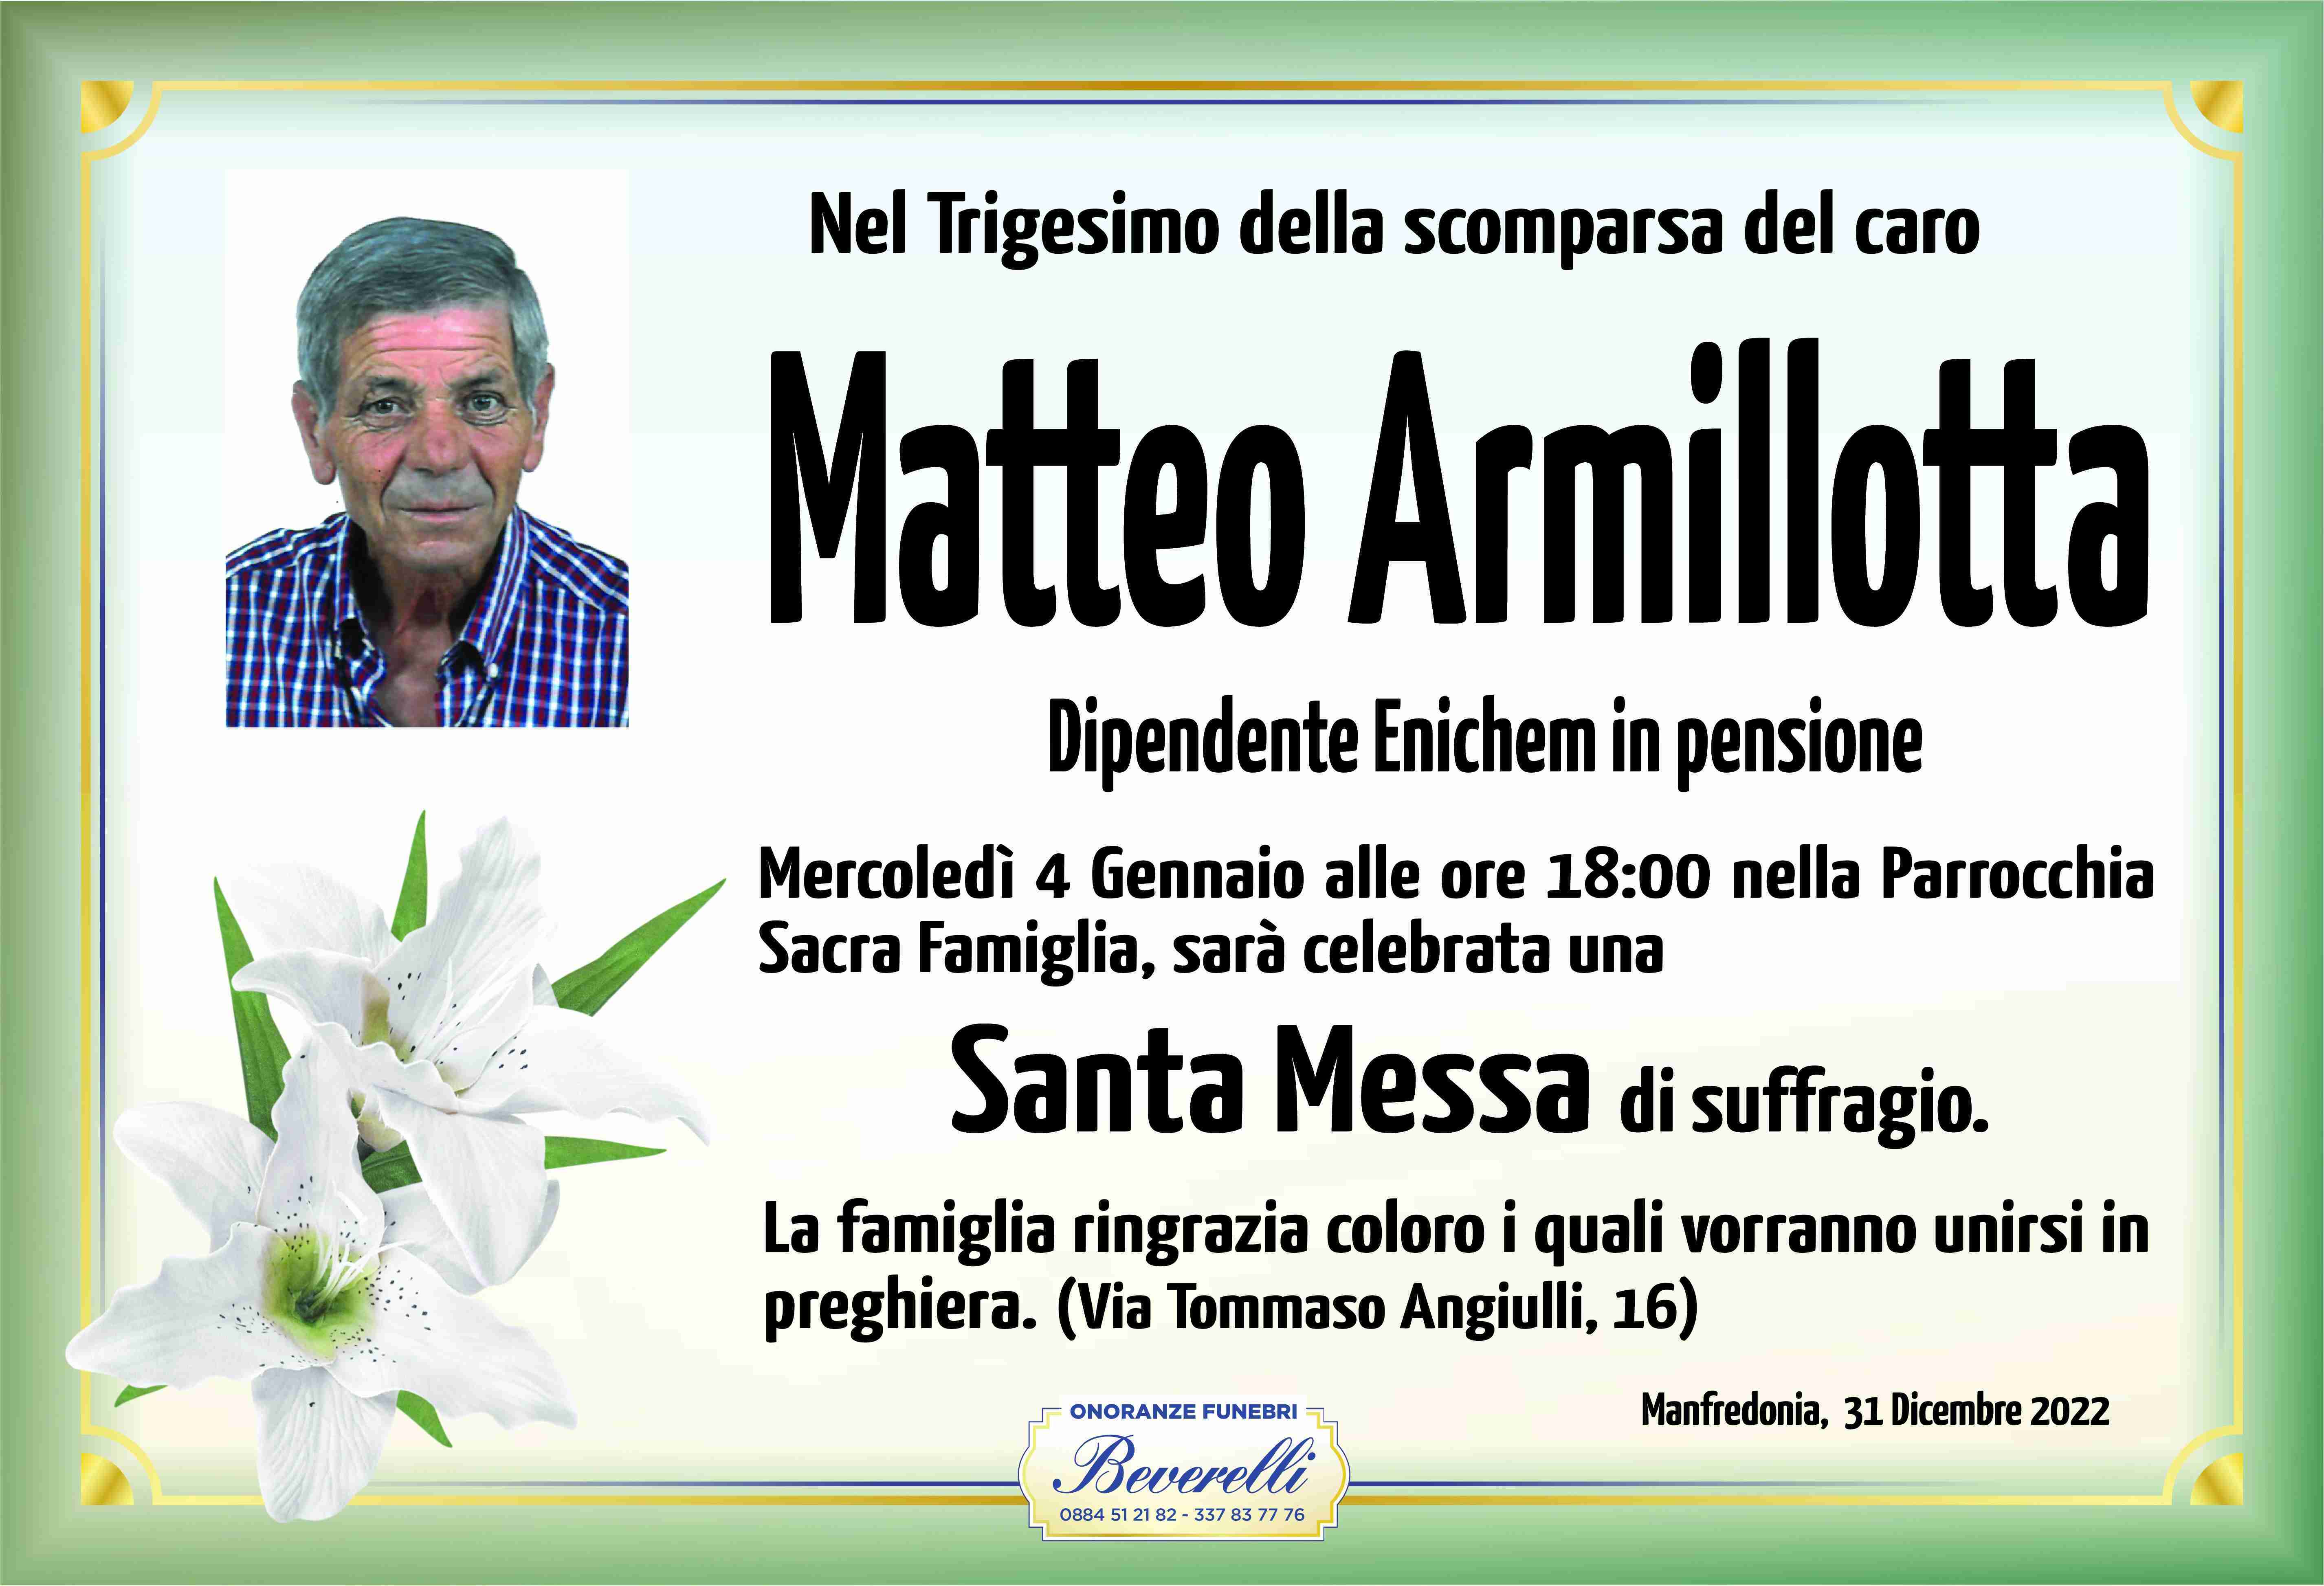 Matteo Armillotta